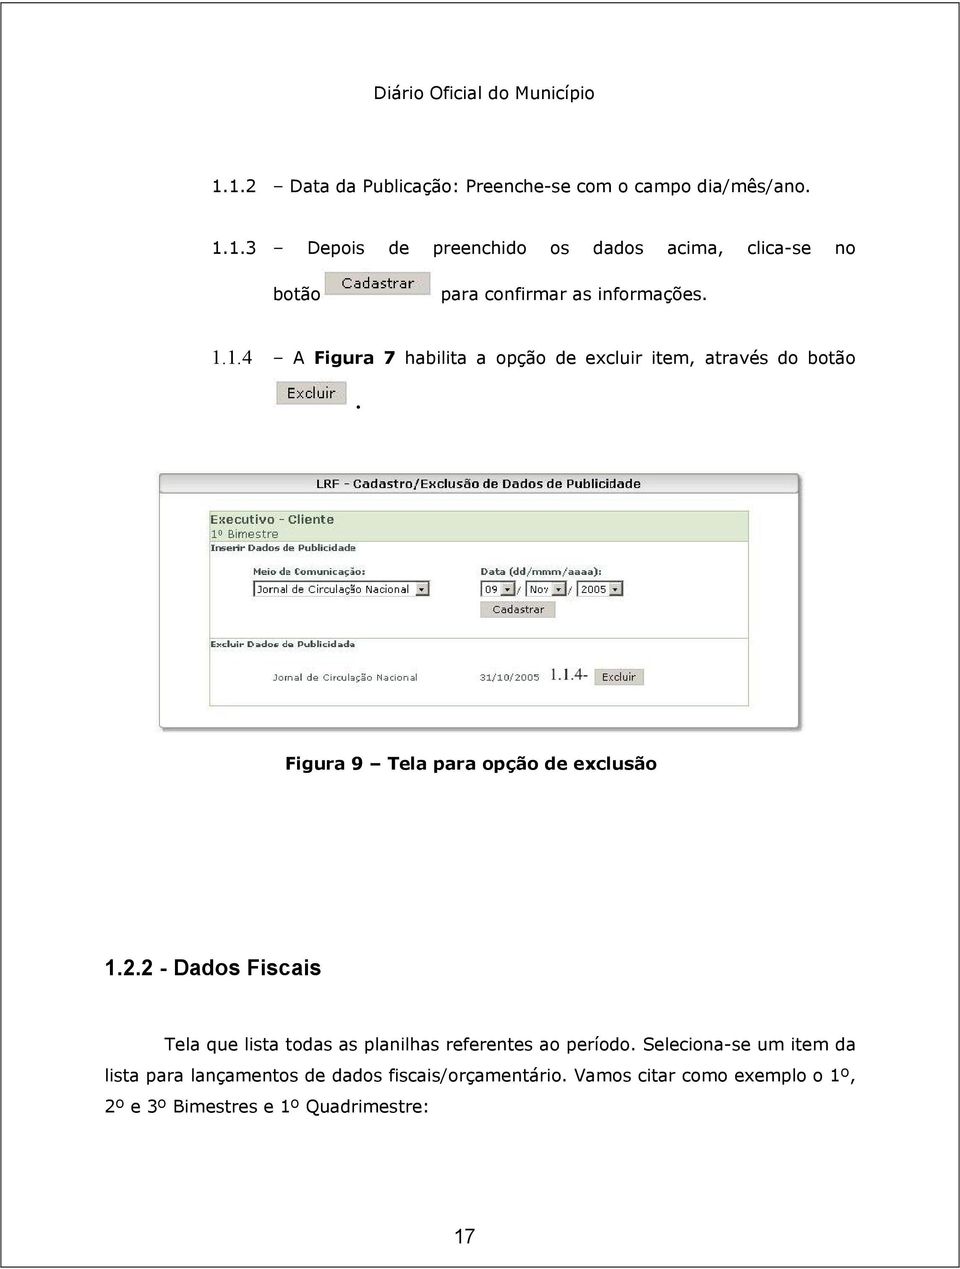 2 - Dados Fiscais Tela que lista todas as planilhas referentes ao período.